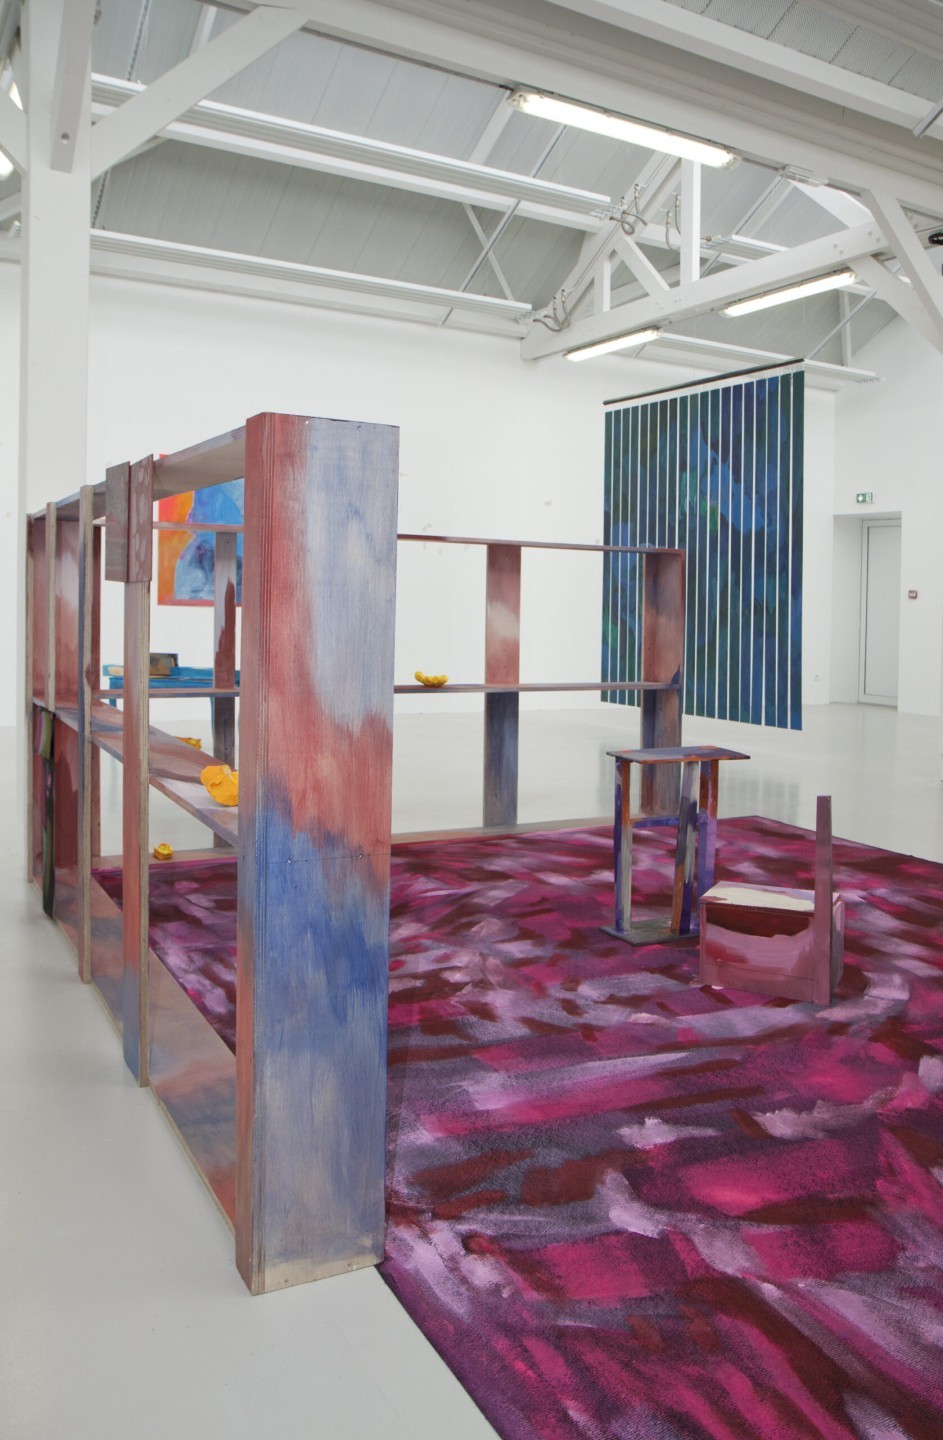 L'oeuvre est un tapis de moquette de 4 mètres par 3, repeint par des traits grossiers de peinture en diffèrentes nuances de rouge.